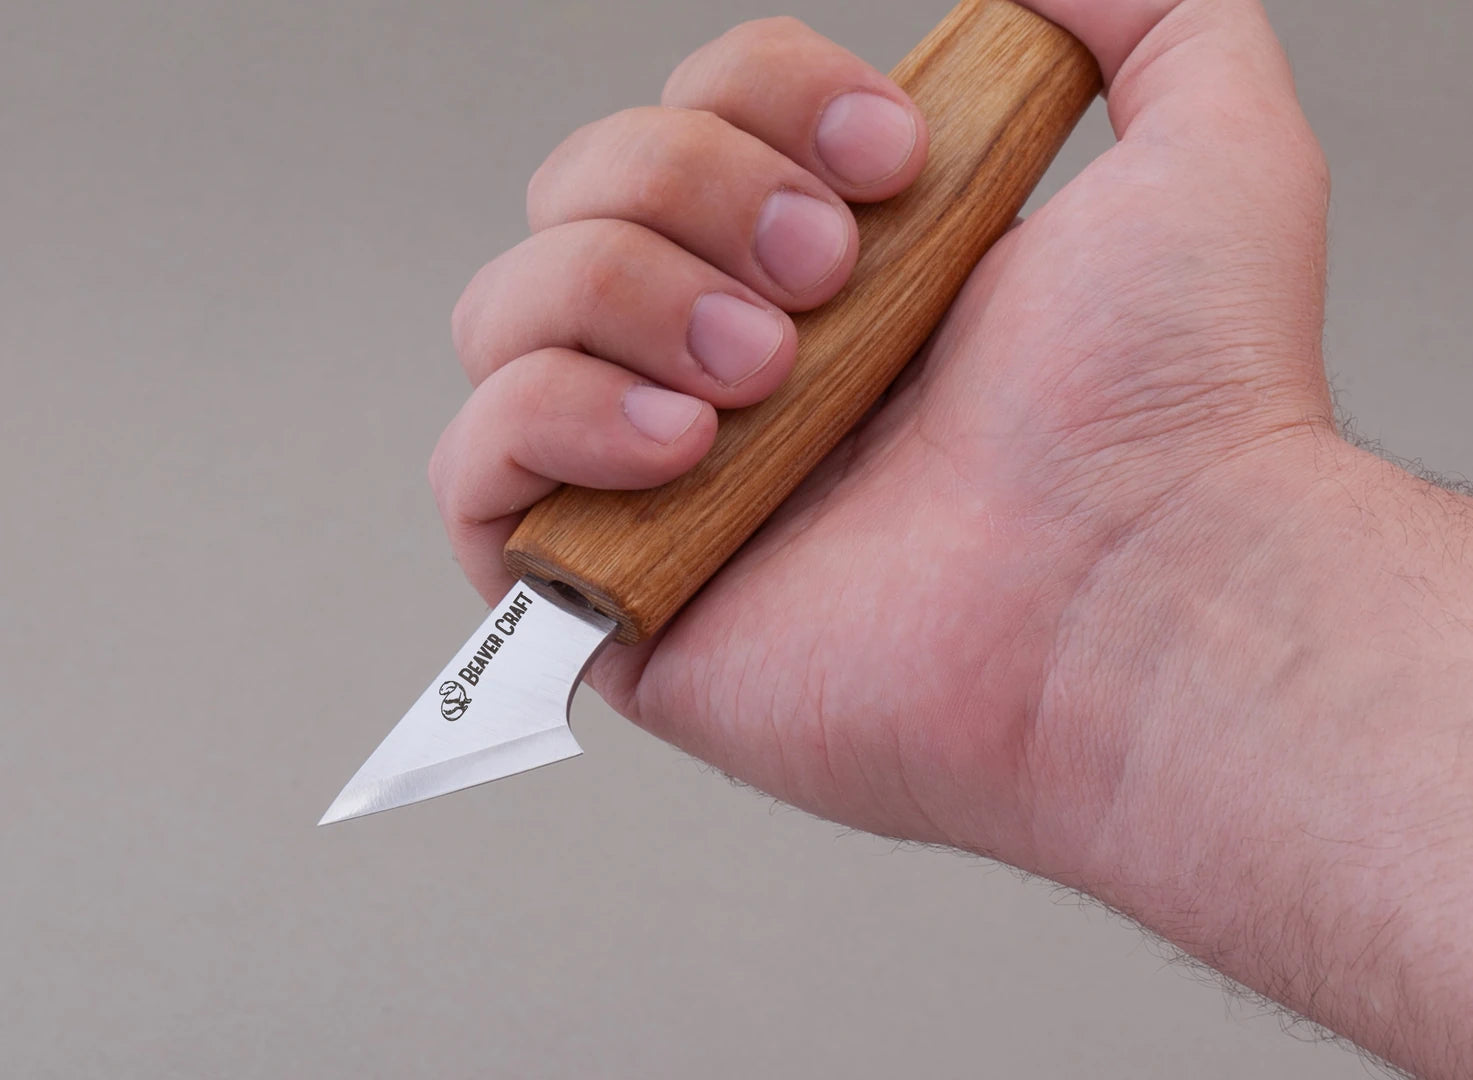 Buy knife for geometric whittling online - BeaverCraft – BeaverCraft Tools